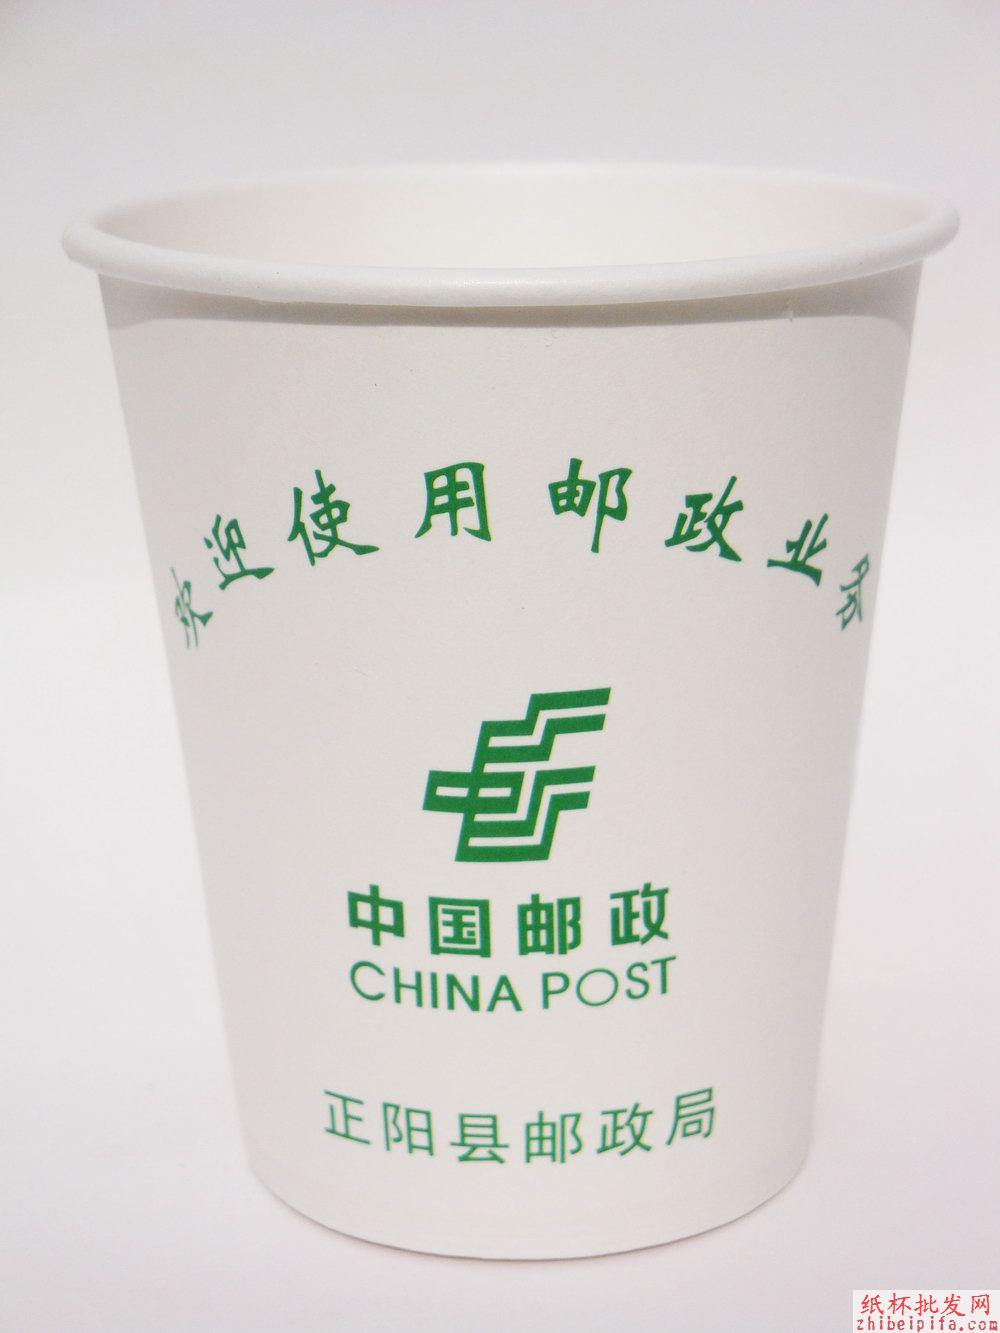 江西/南昌/广告纸杯/一次性纸杯/环保纸杯/纸杯生产/纸杯价格/纸杯批发